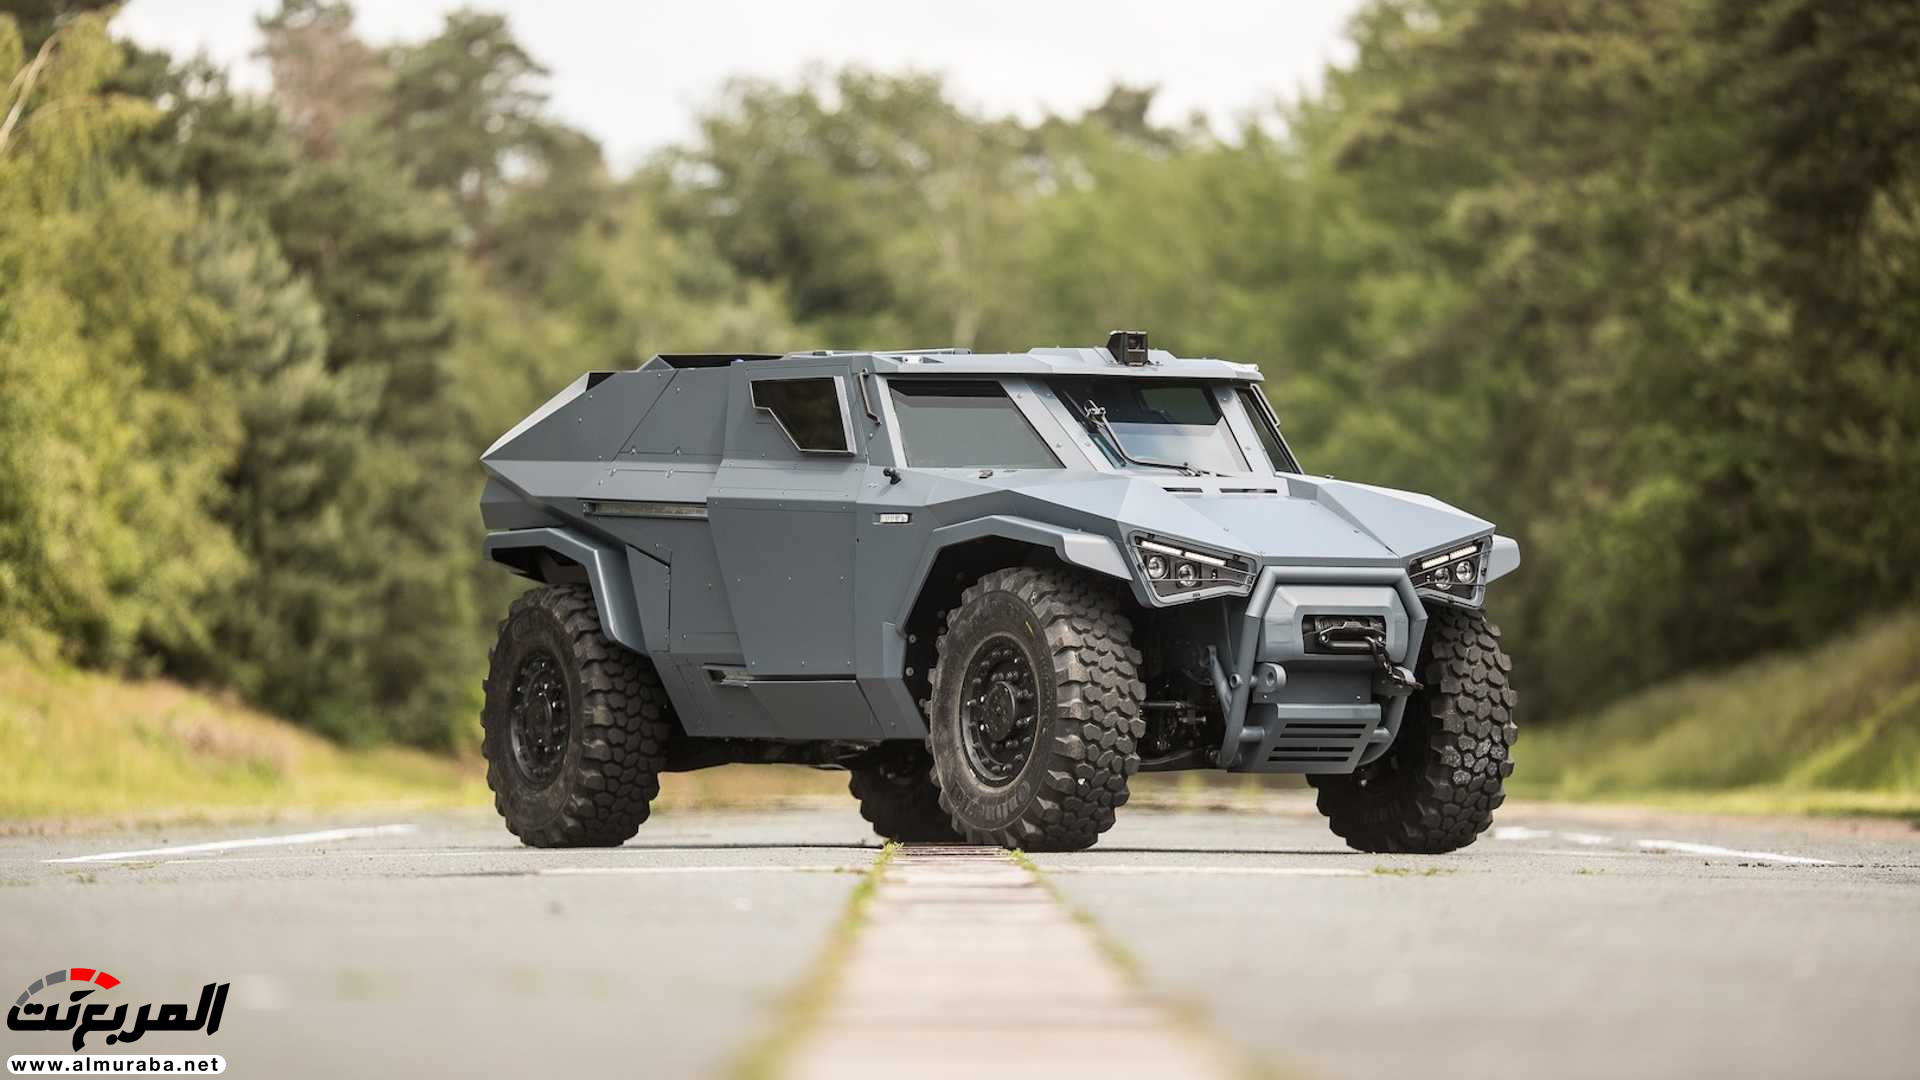 "بالفيديو والصور" فولفو صنعت سيارة عسكرية تنافس همر 22